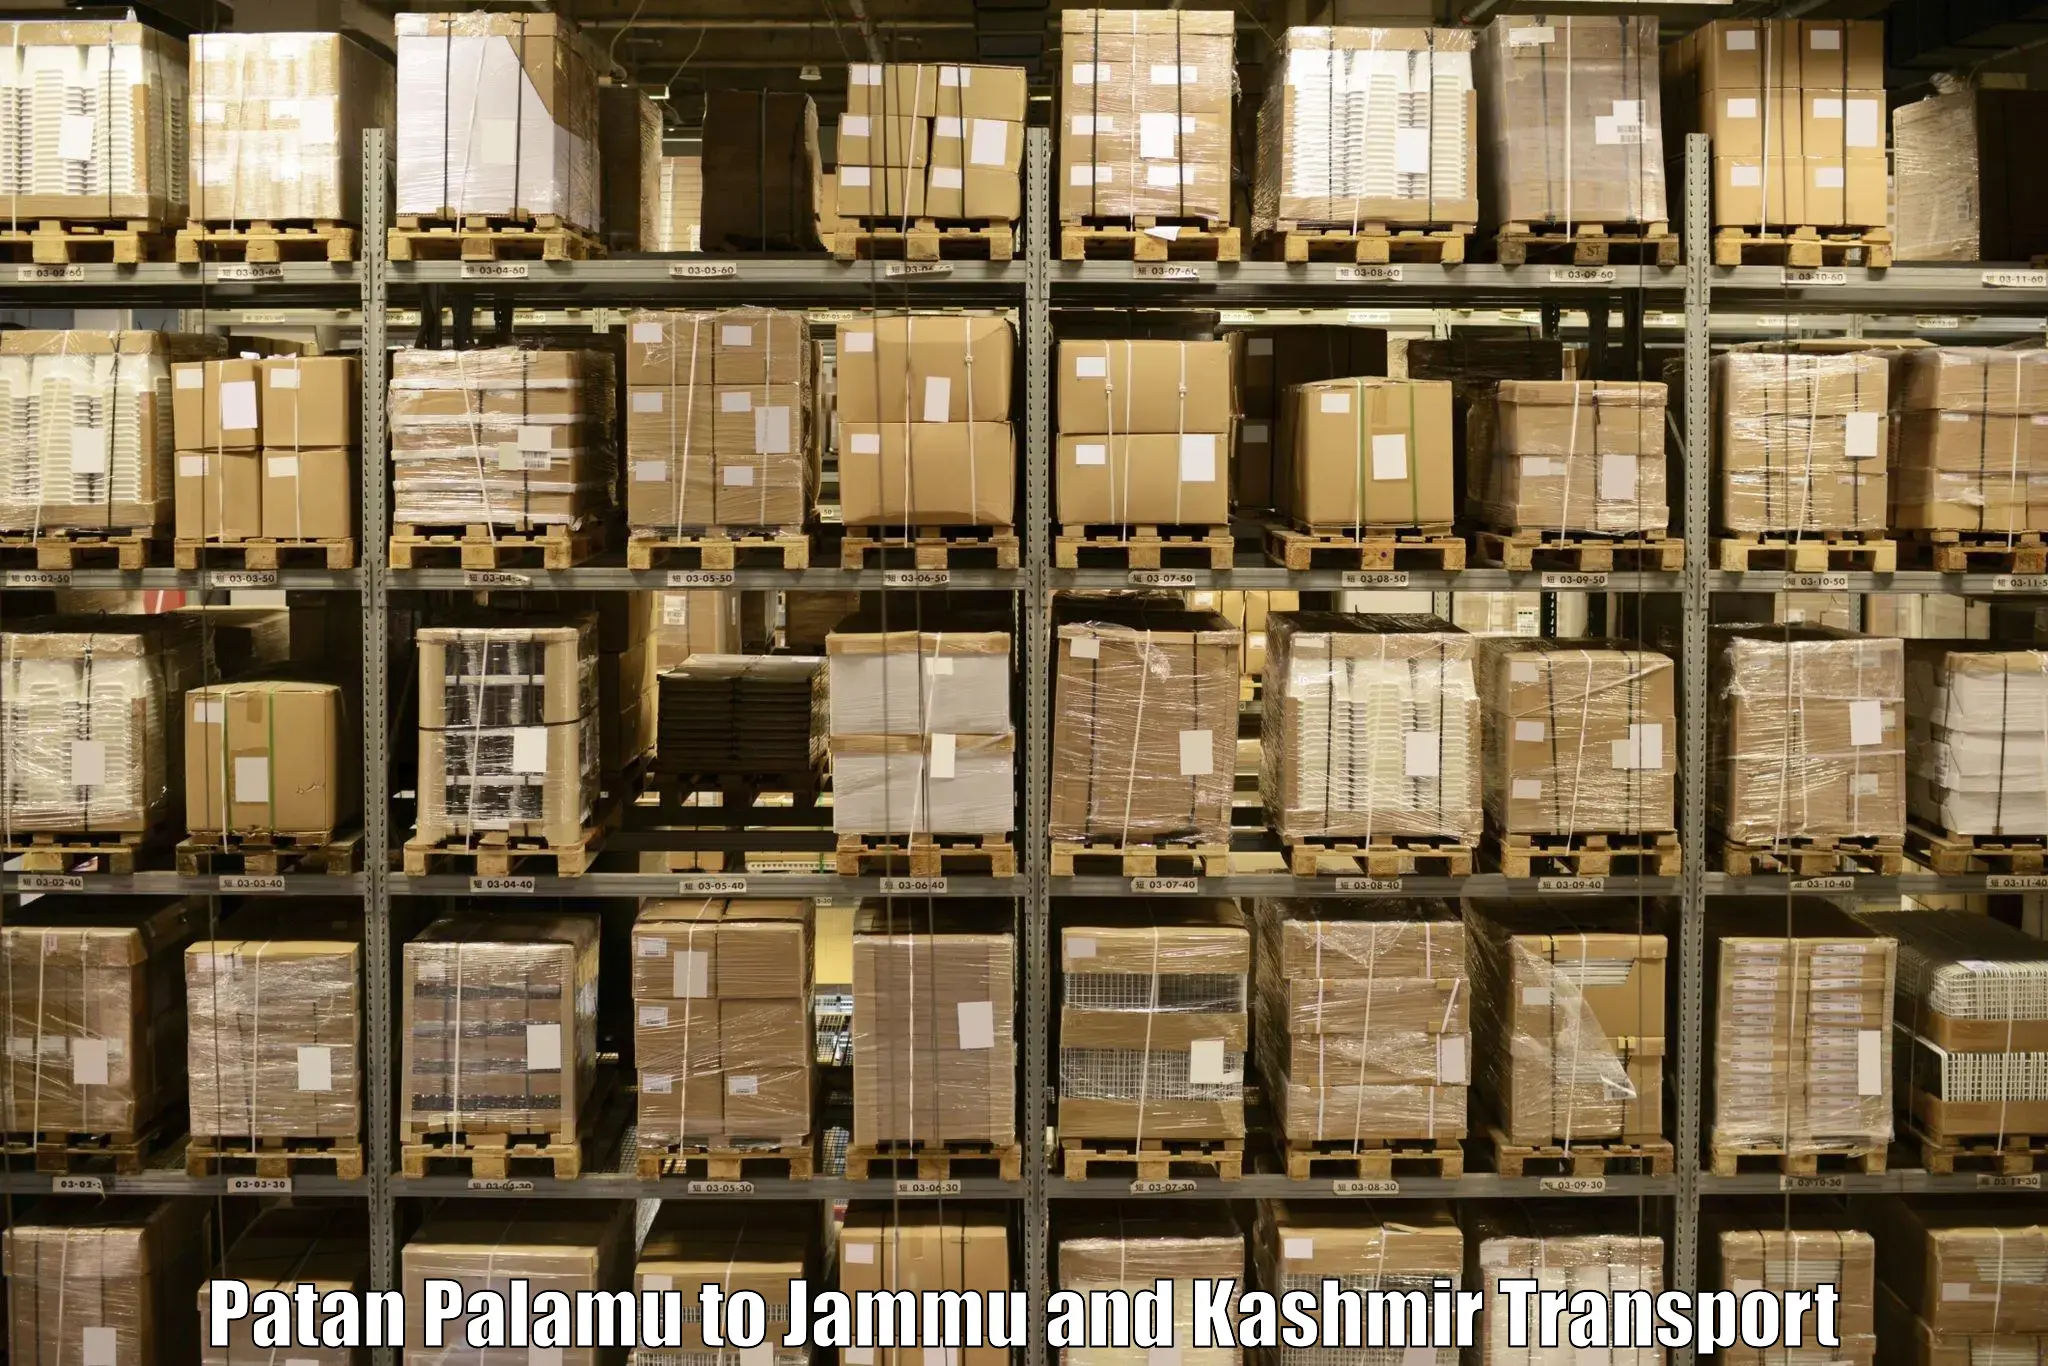 Logistics transportation services Patan Palamu to Jammu and Kashmir